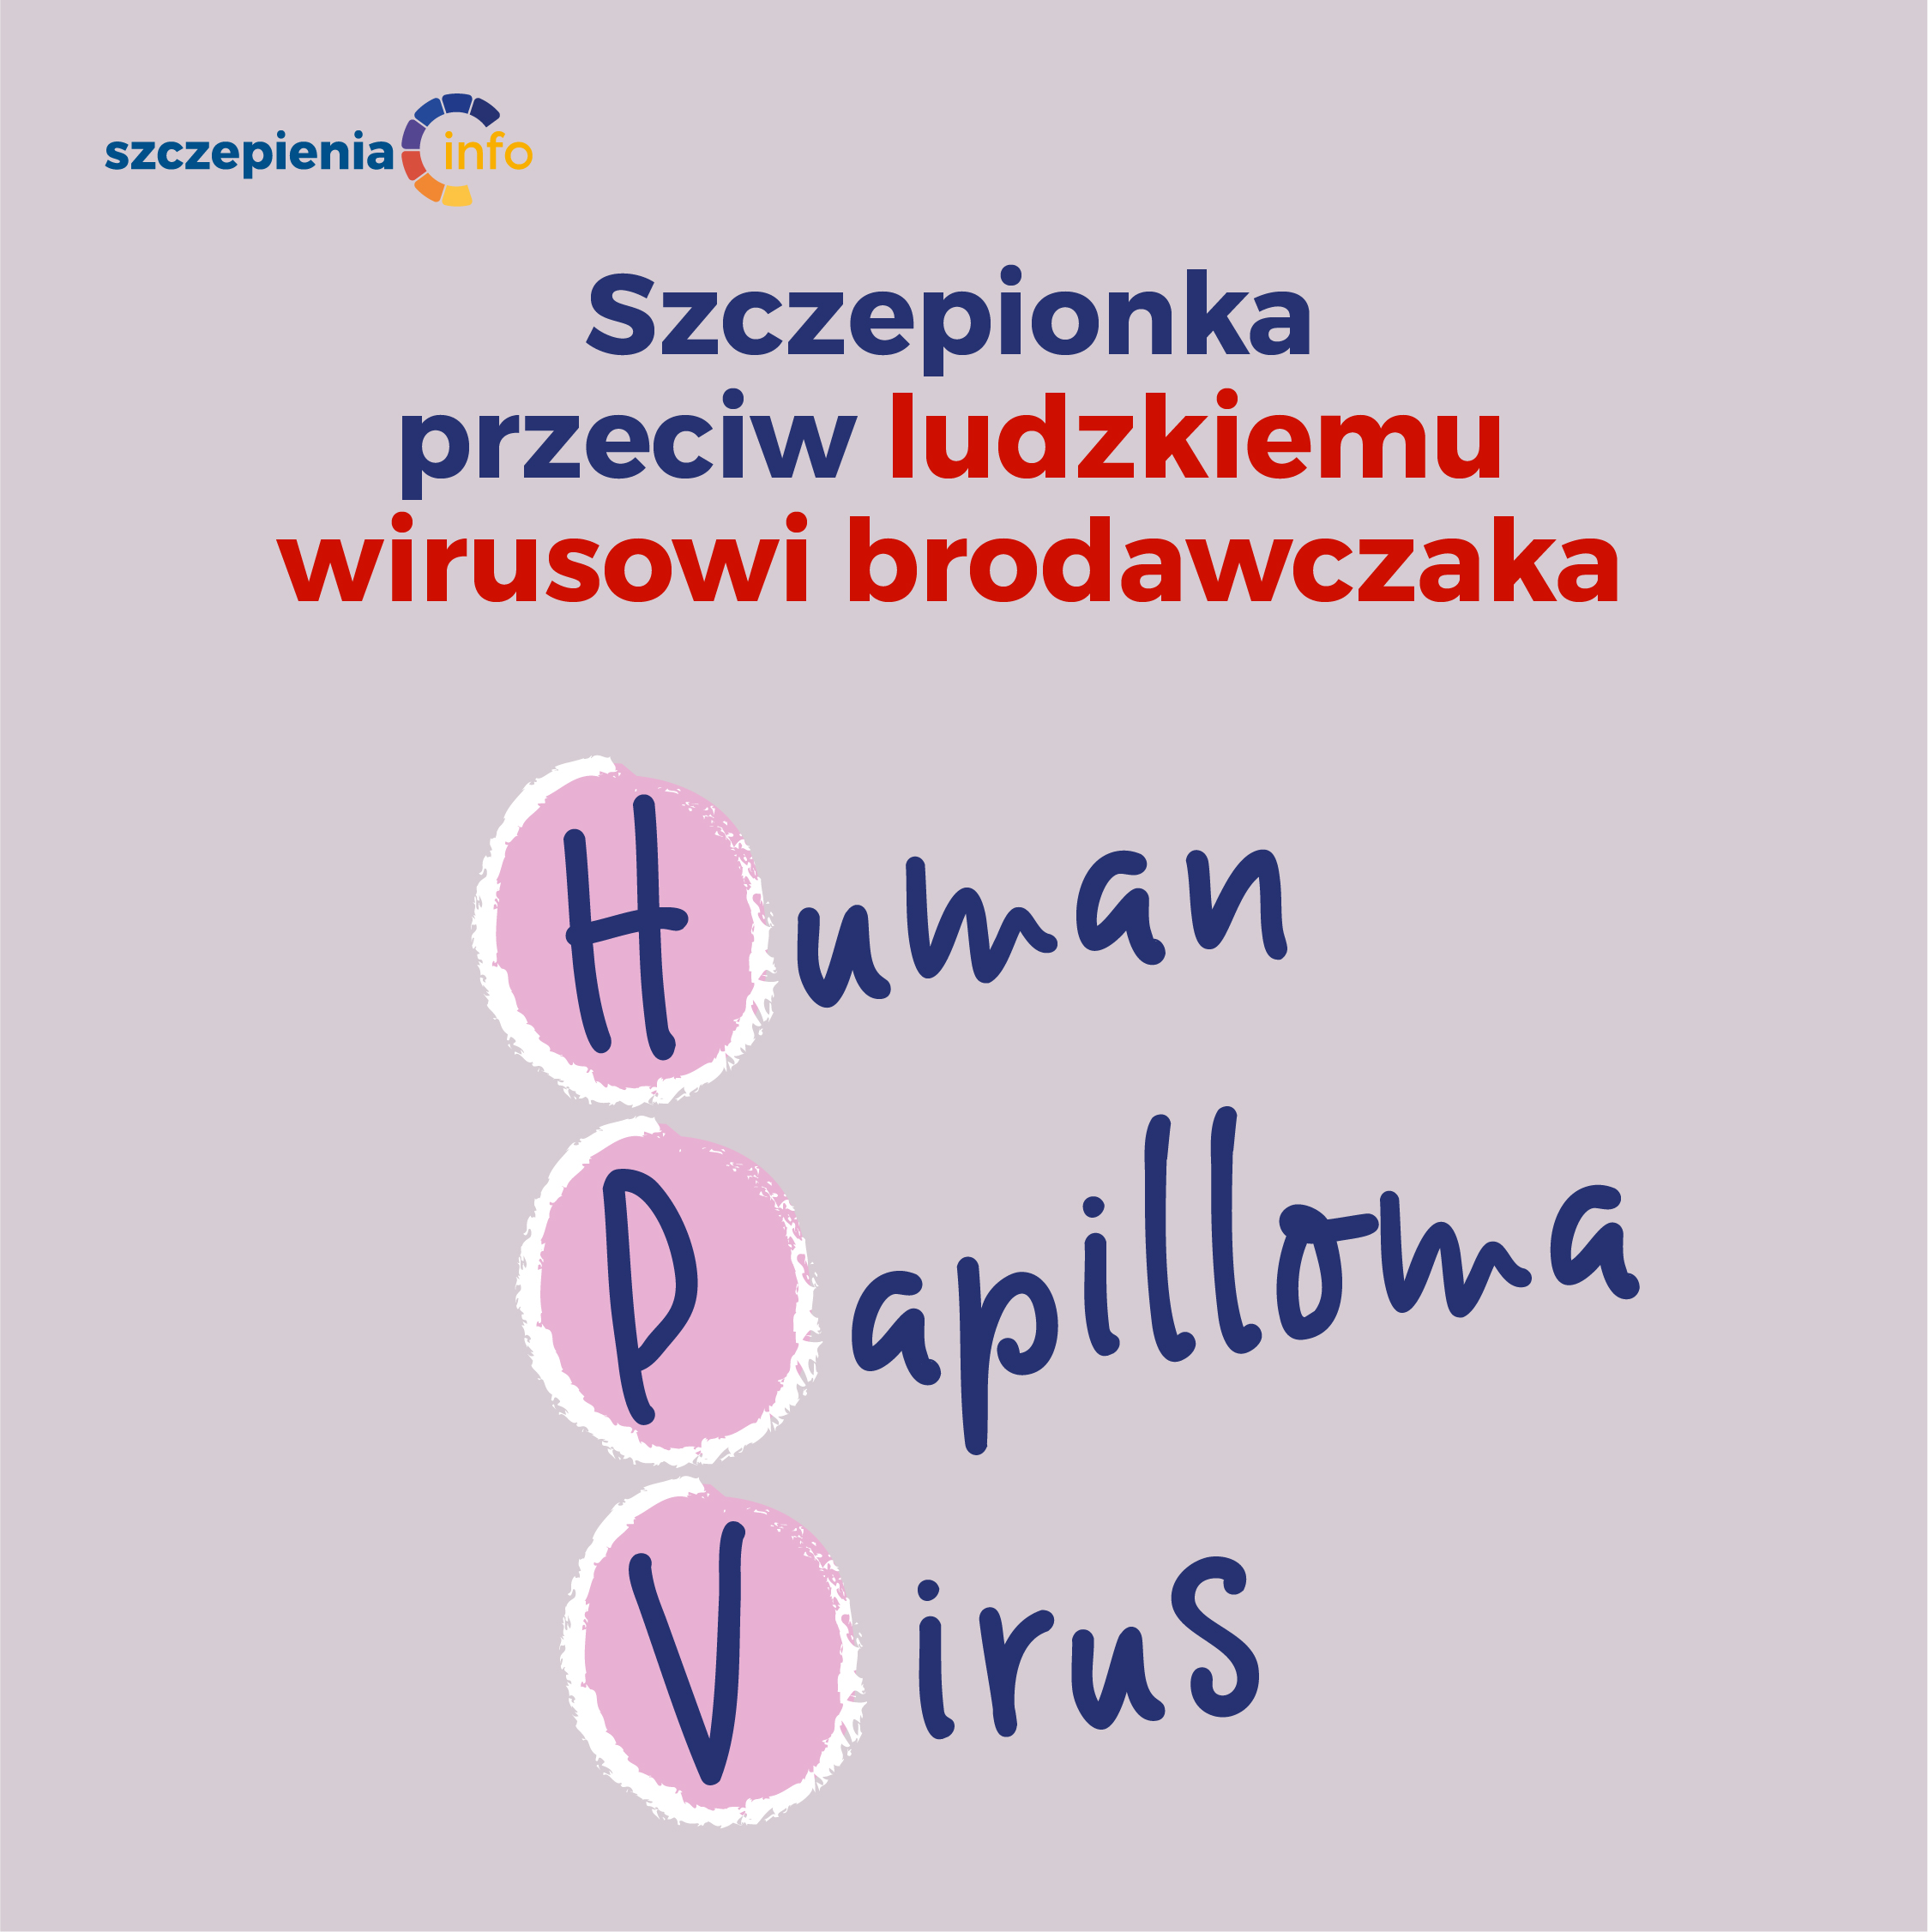 HPV - Szczepienia.Info